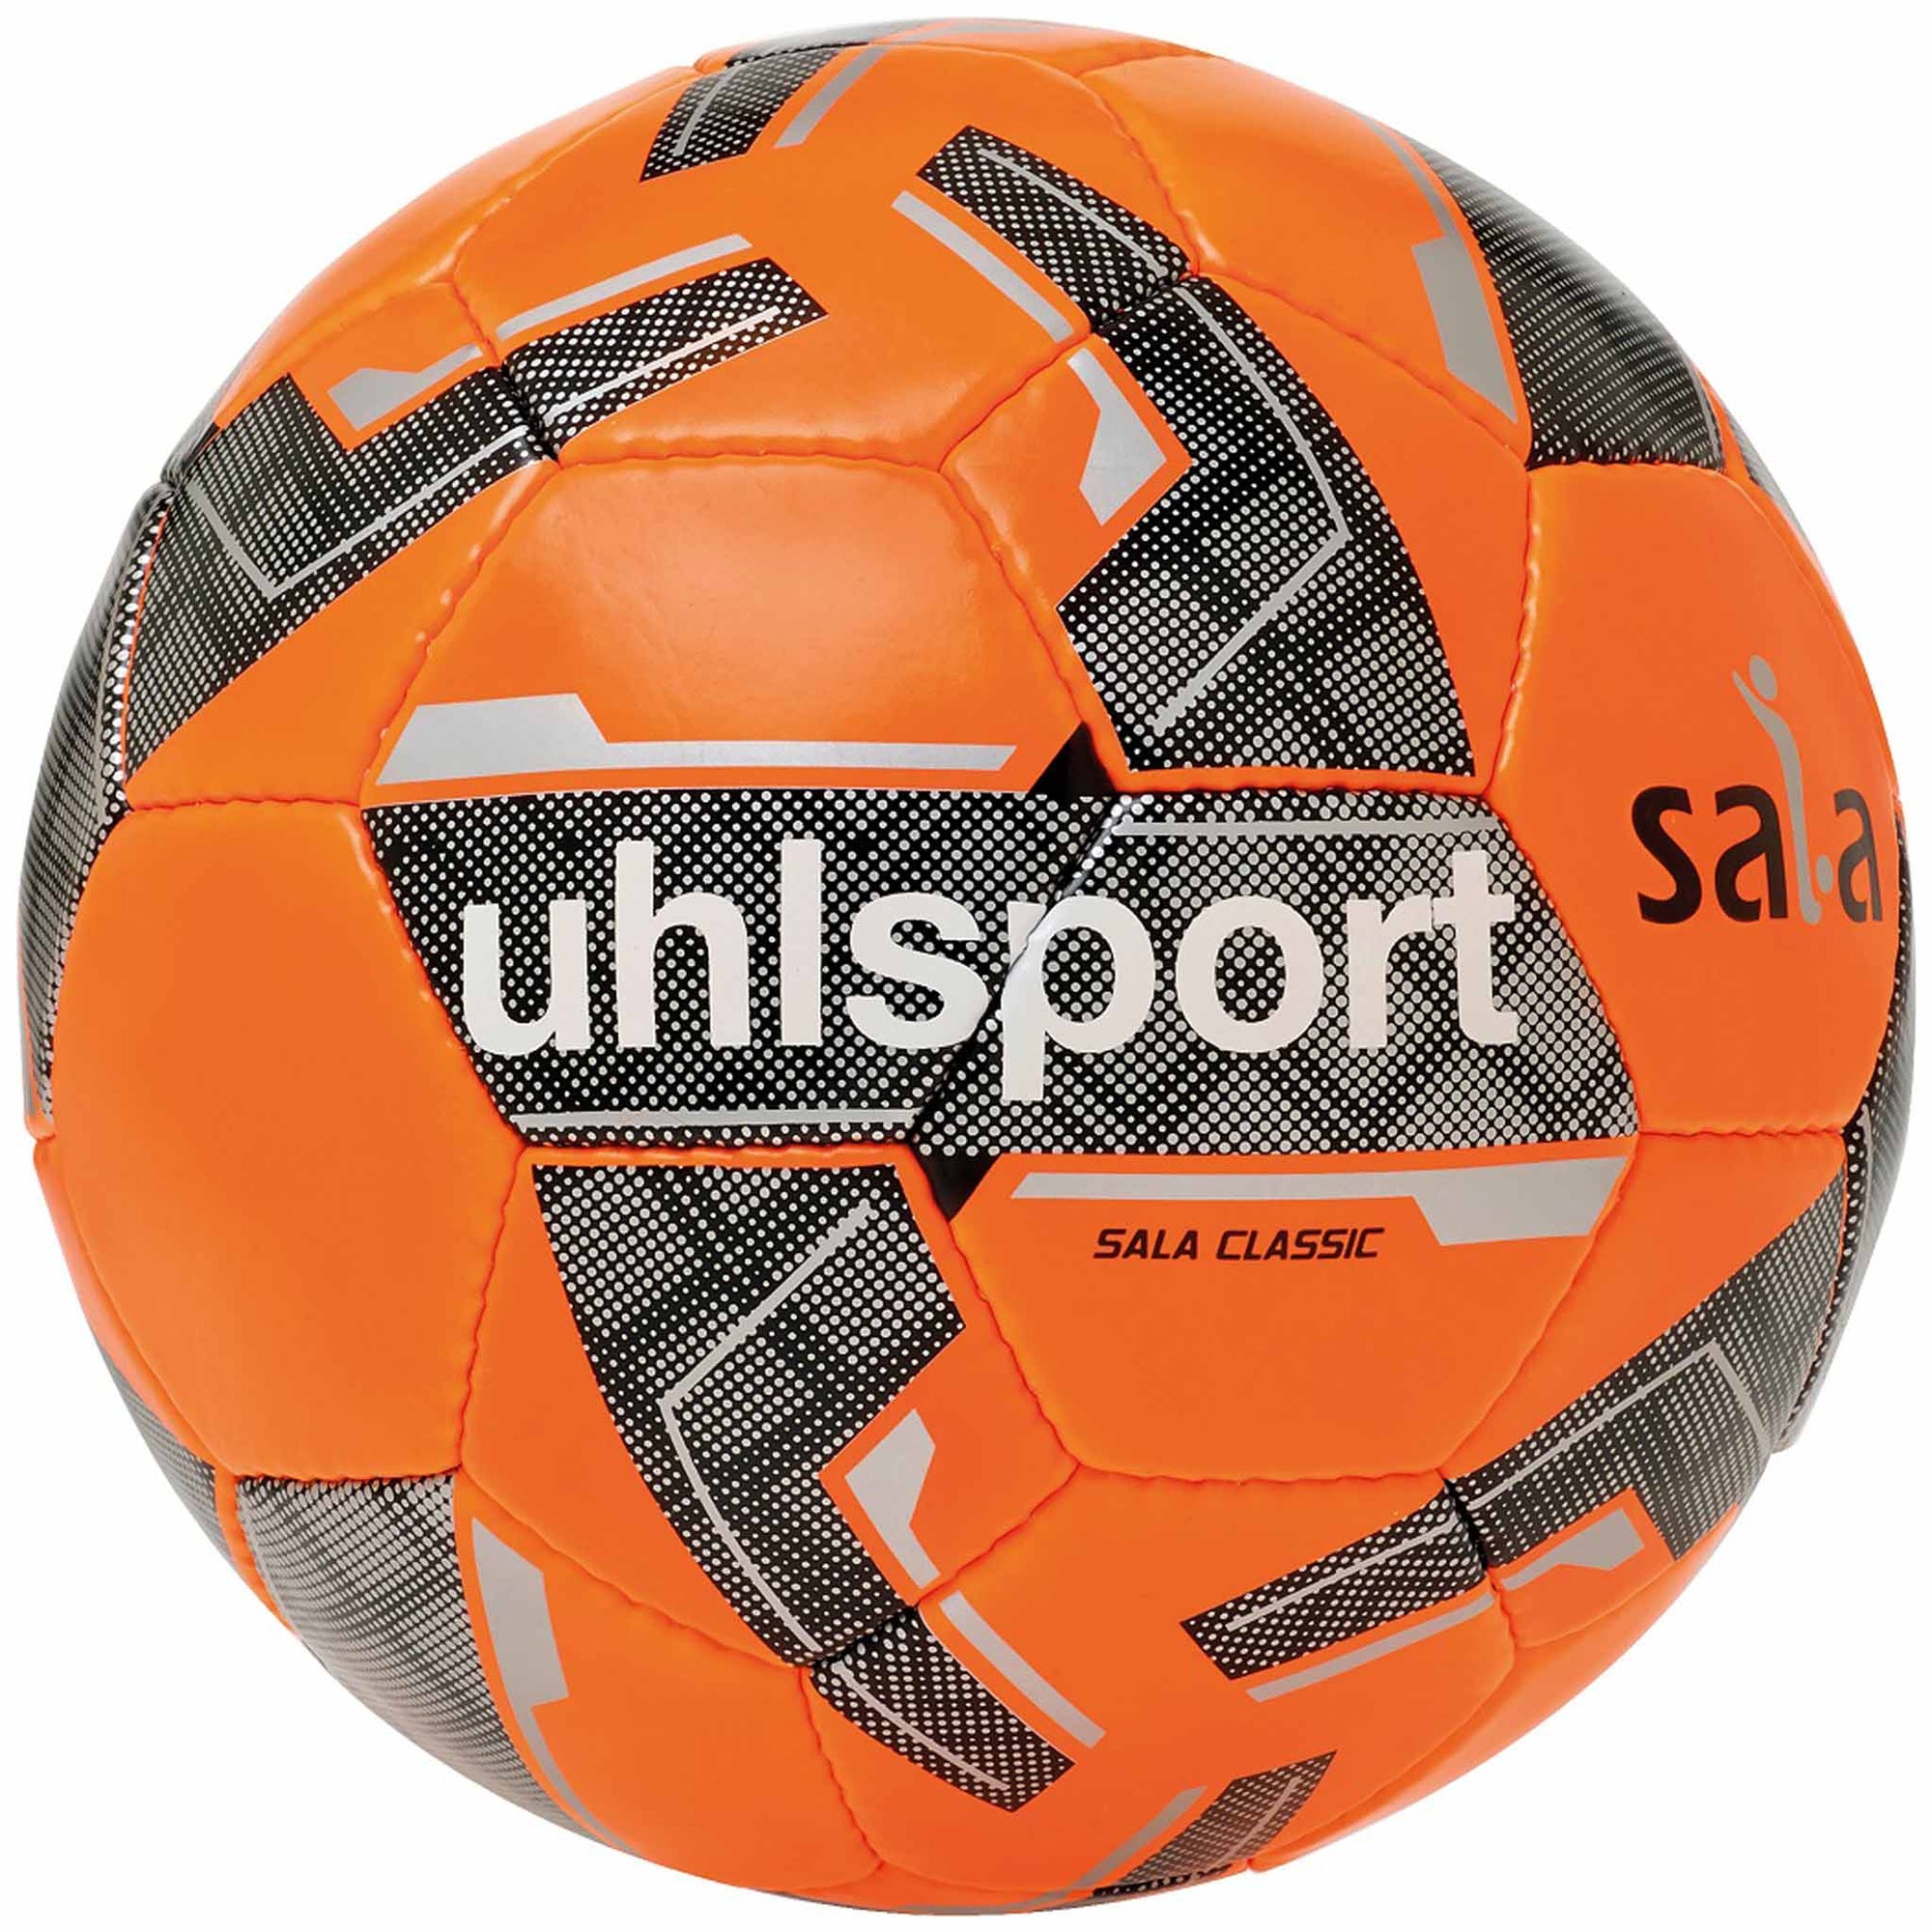 Uhlsport Sala Classic ballon de futsal - Orange / Gris